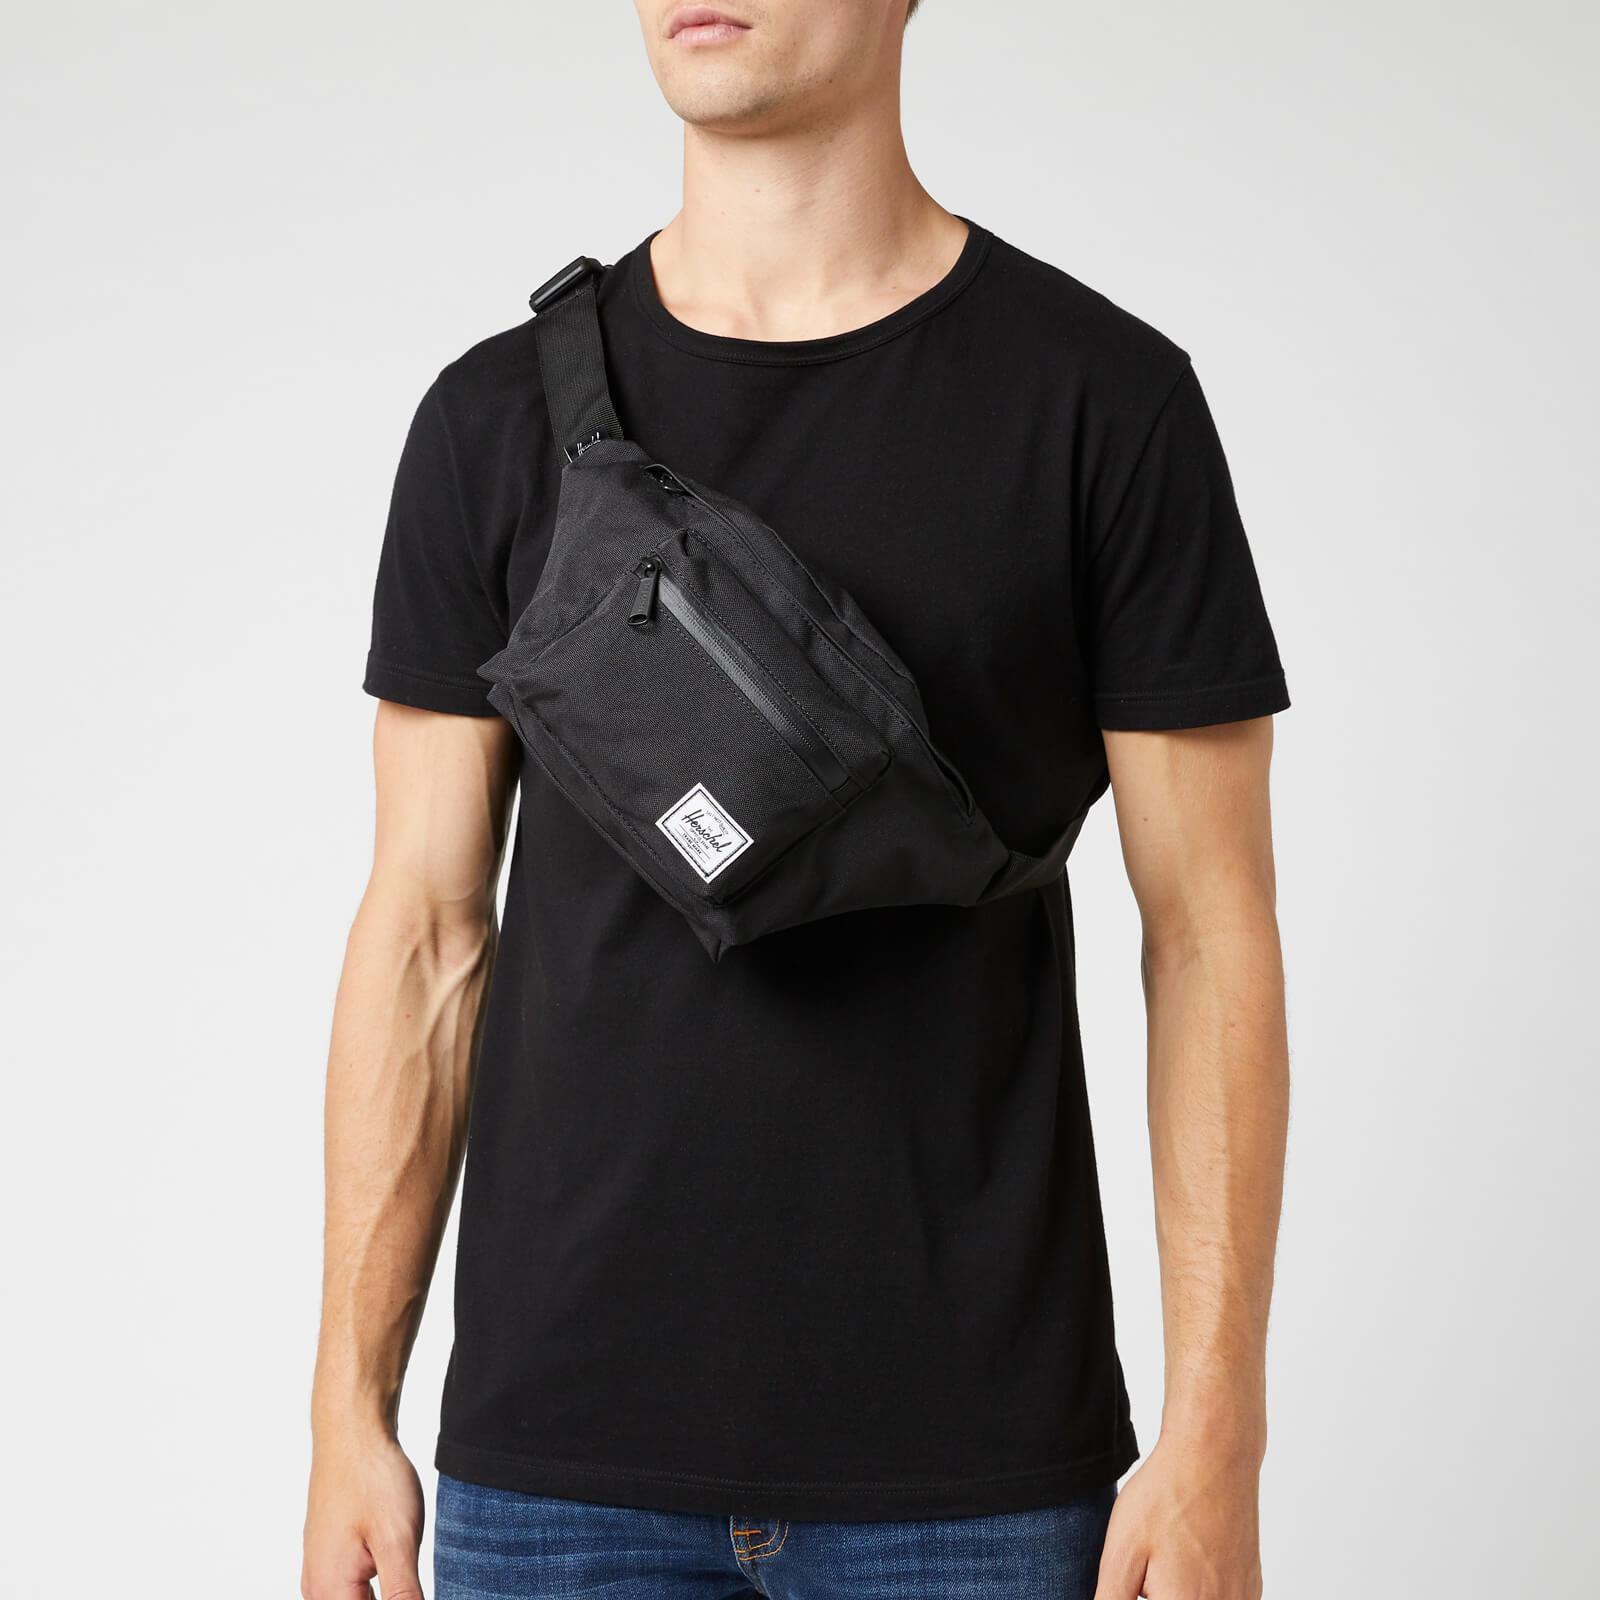 Herschel Supply Co. Seventeen Cross Body Bag in Black for Men - Lyst